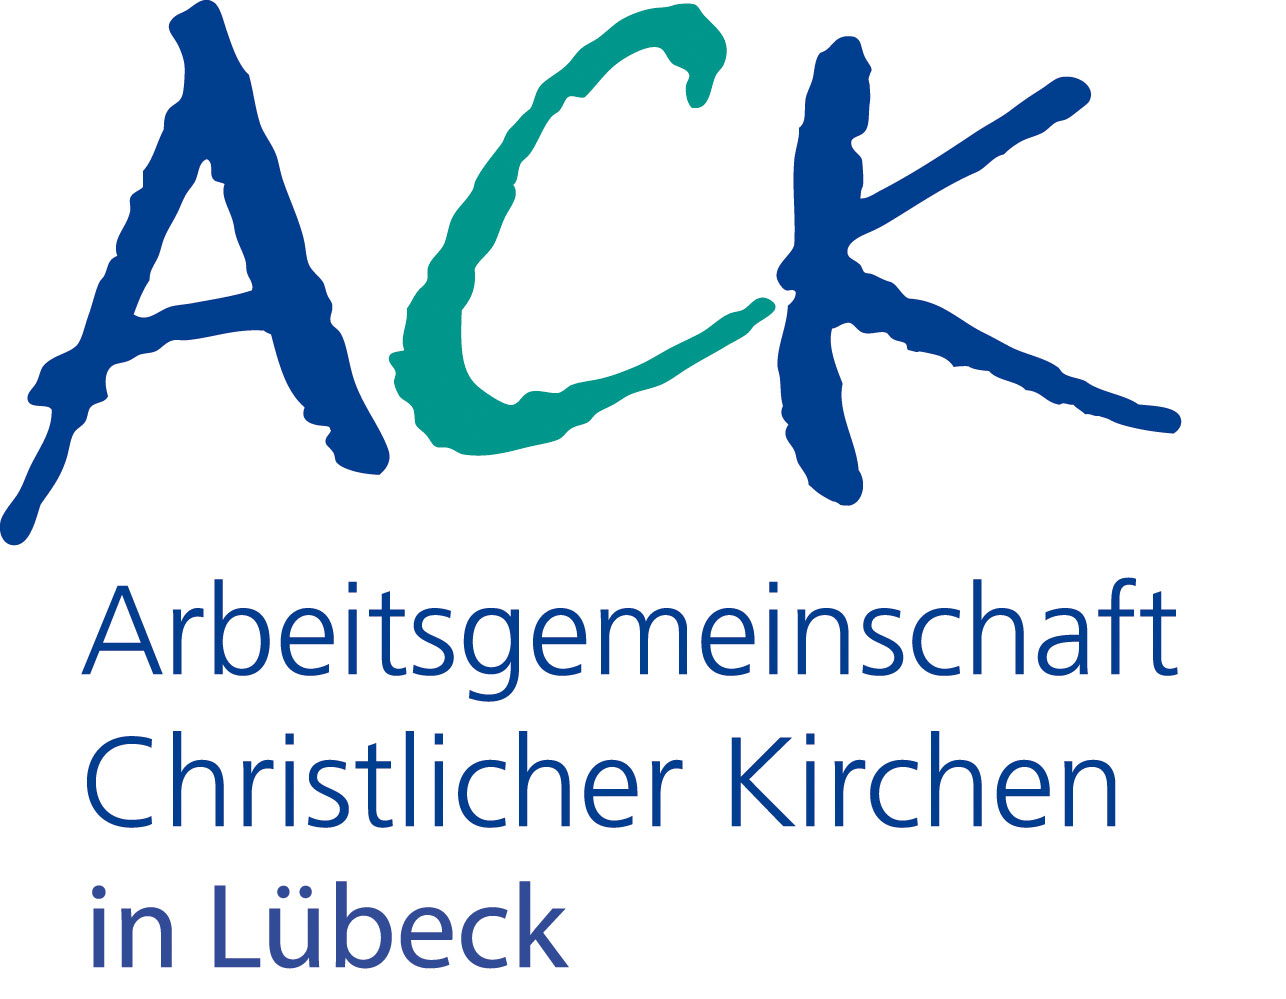 Die Großbuchstaben A in dunkelblauer Farbe, C in grüner Farbe und K ebenso wie A - Darunter der Schriftzug "Arbeitsgemeinschaft Christlicher Kirchen in Lübeck"